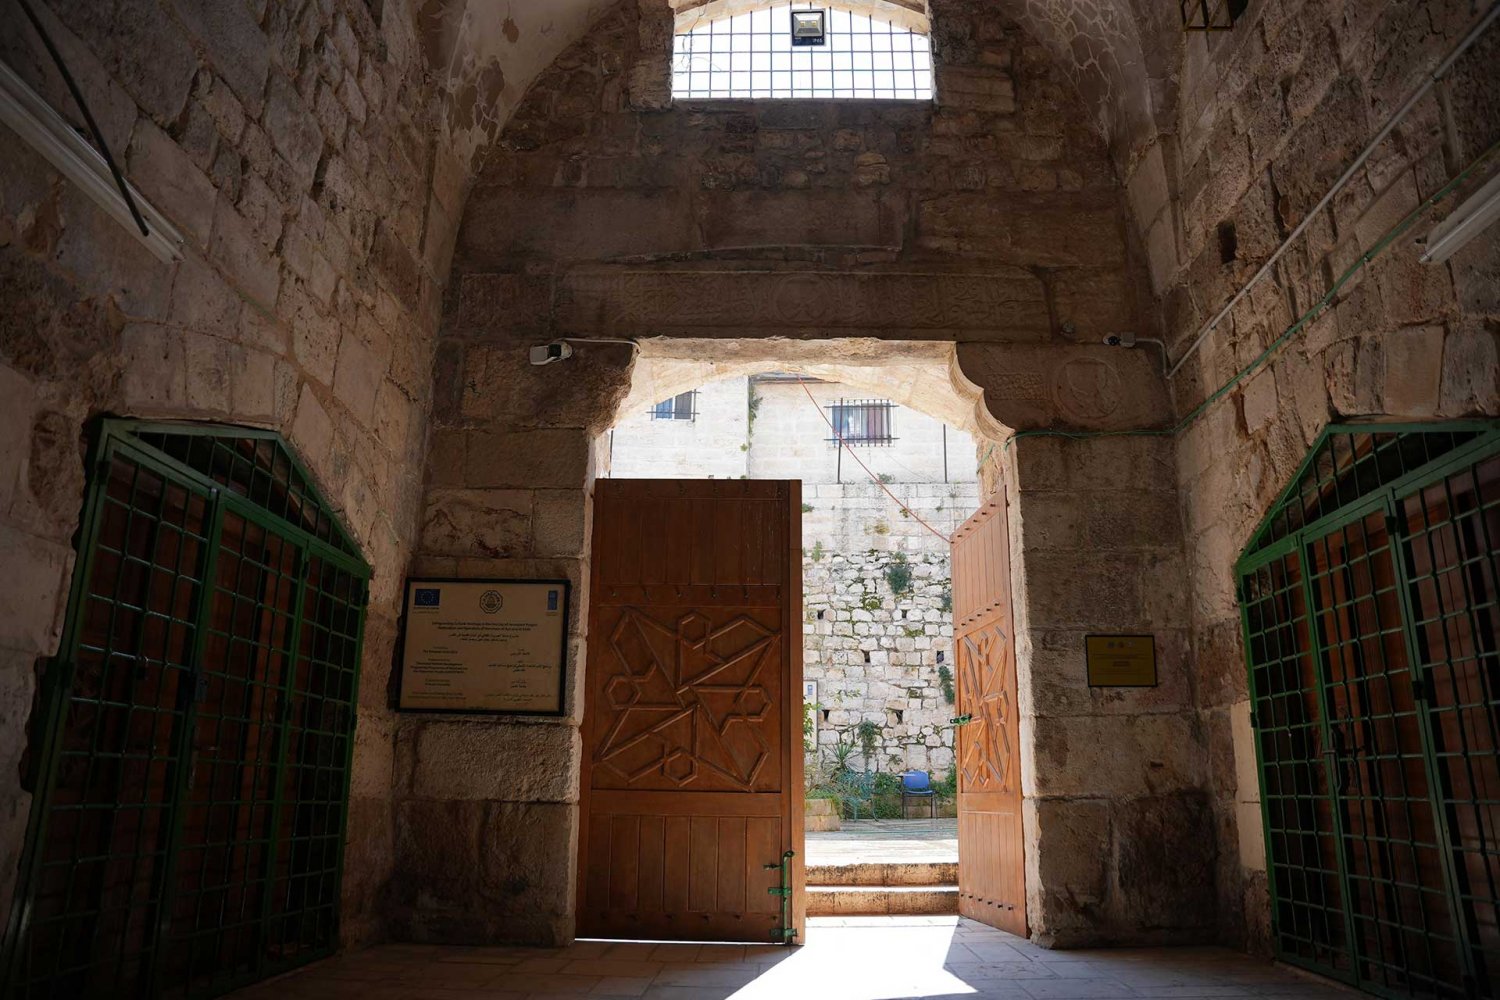 The historic entrance of the Center for Jerusalem Studies at Al-Quds University in Jerusalem’s Old City.